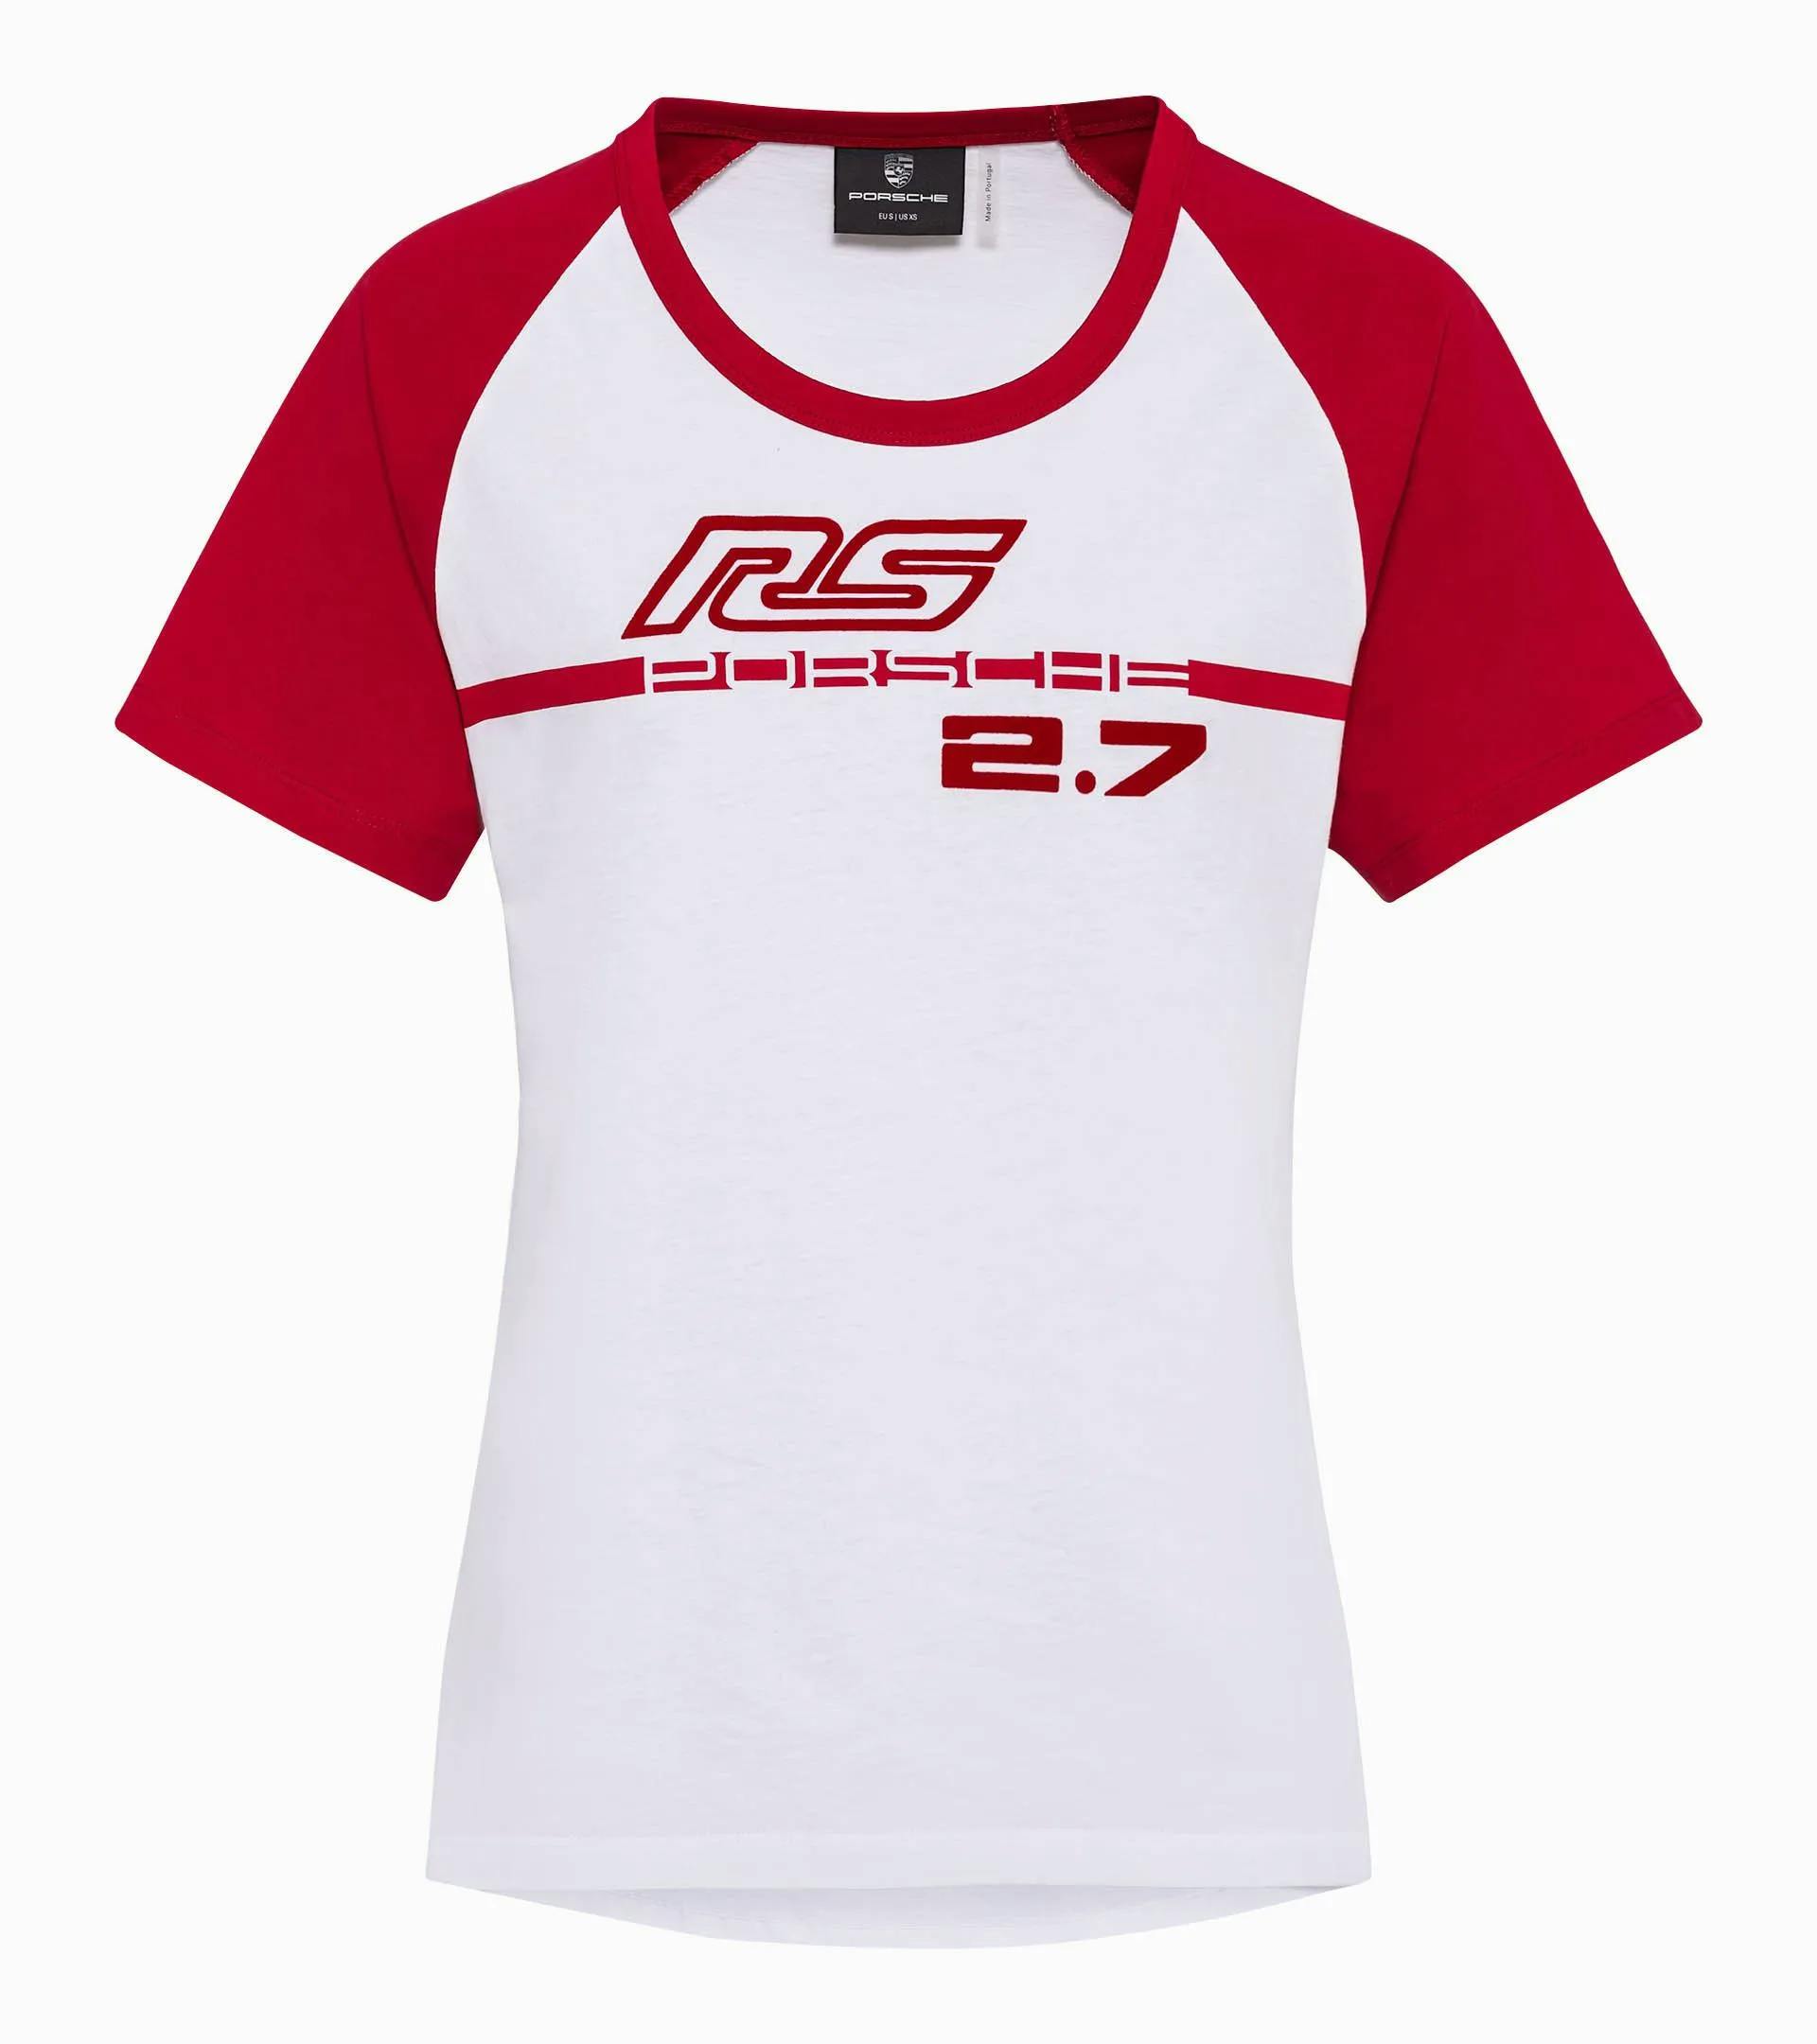 T-shirt da donna – RS 2.7 1